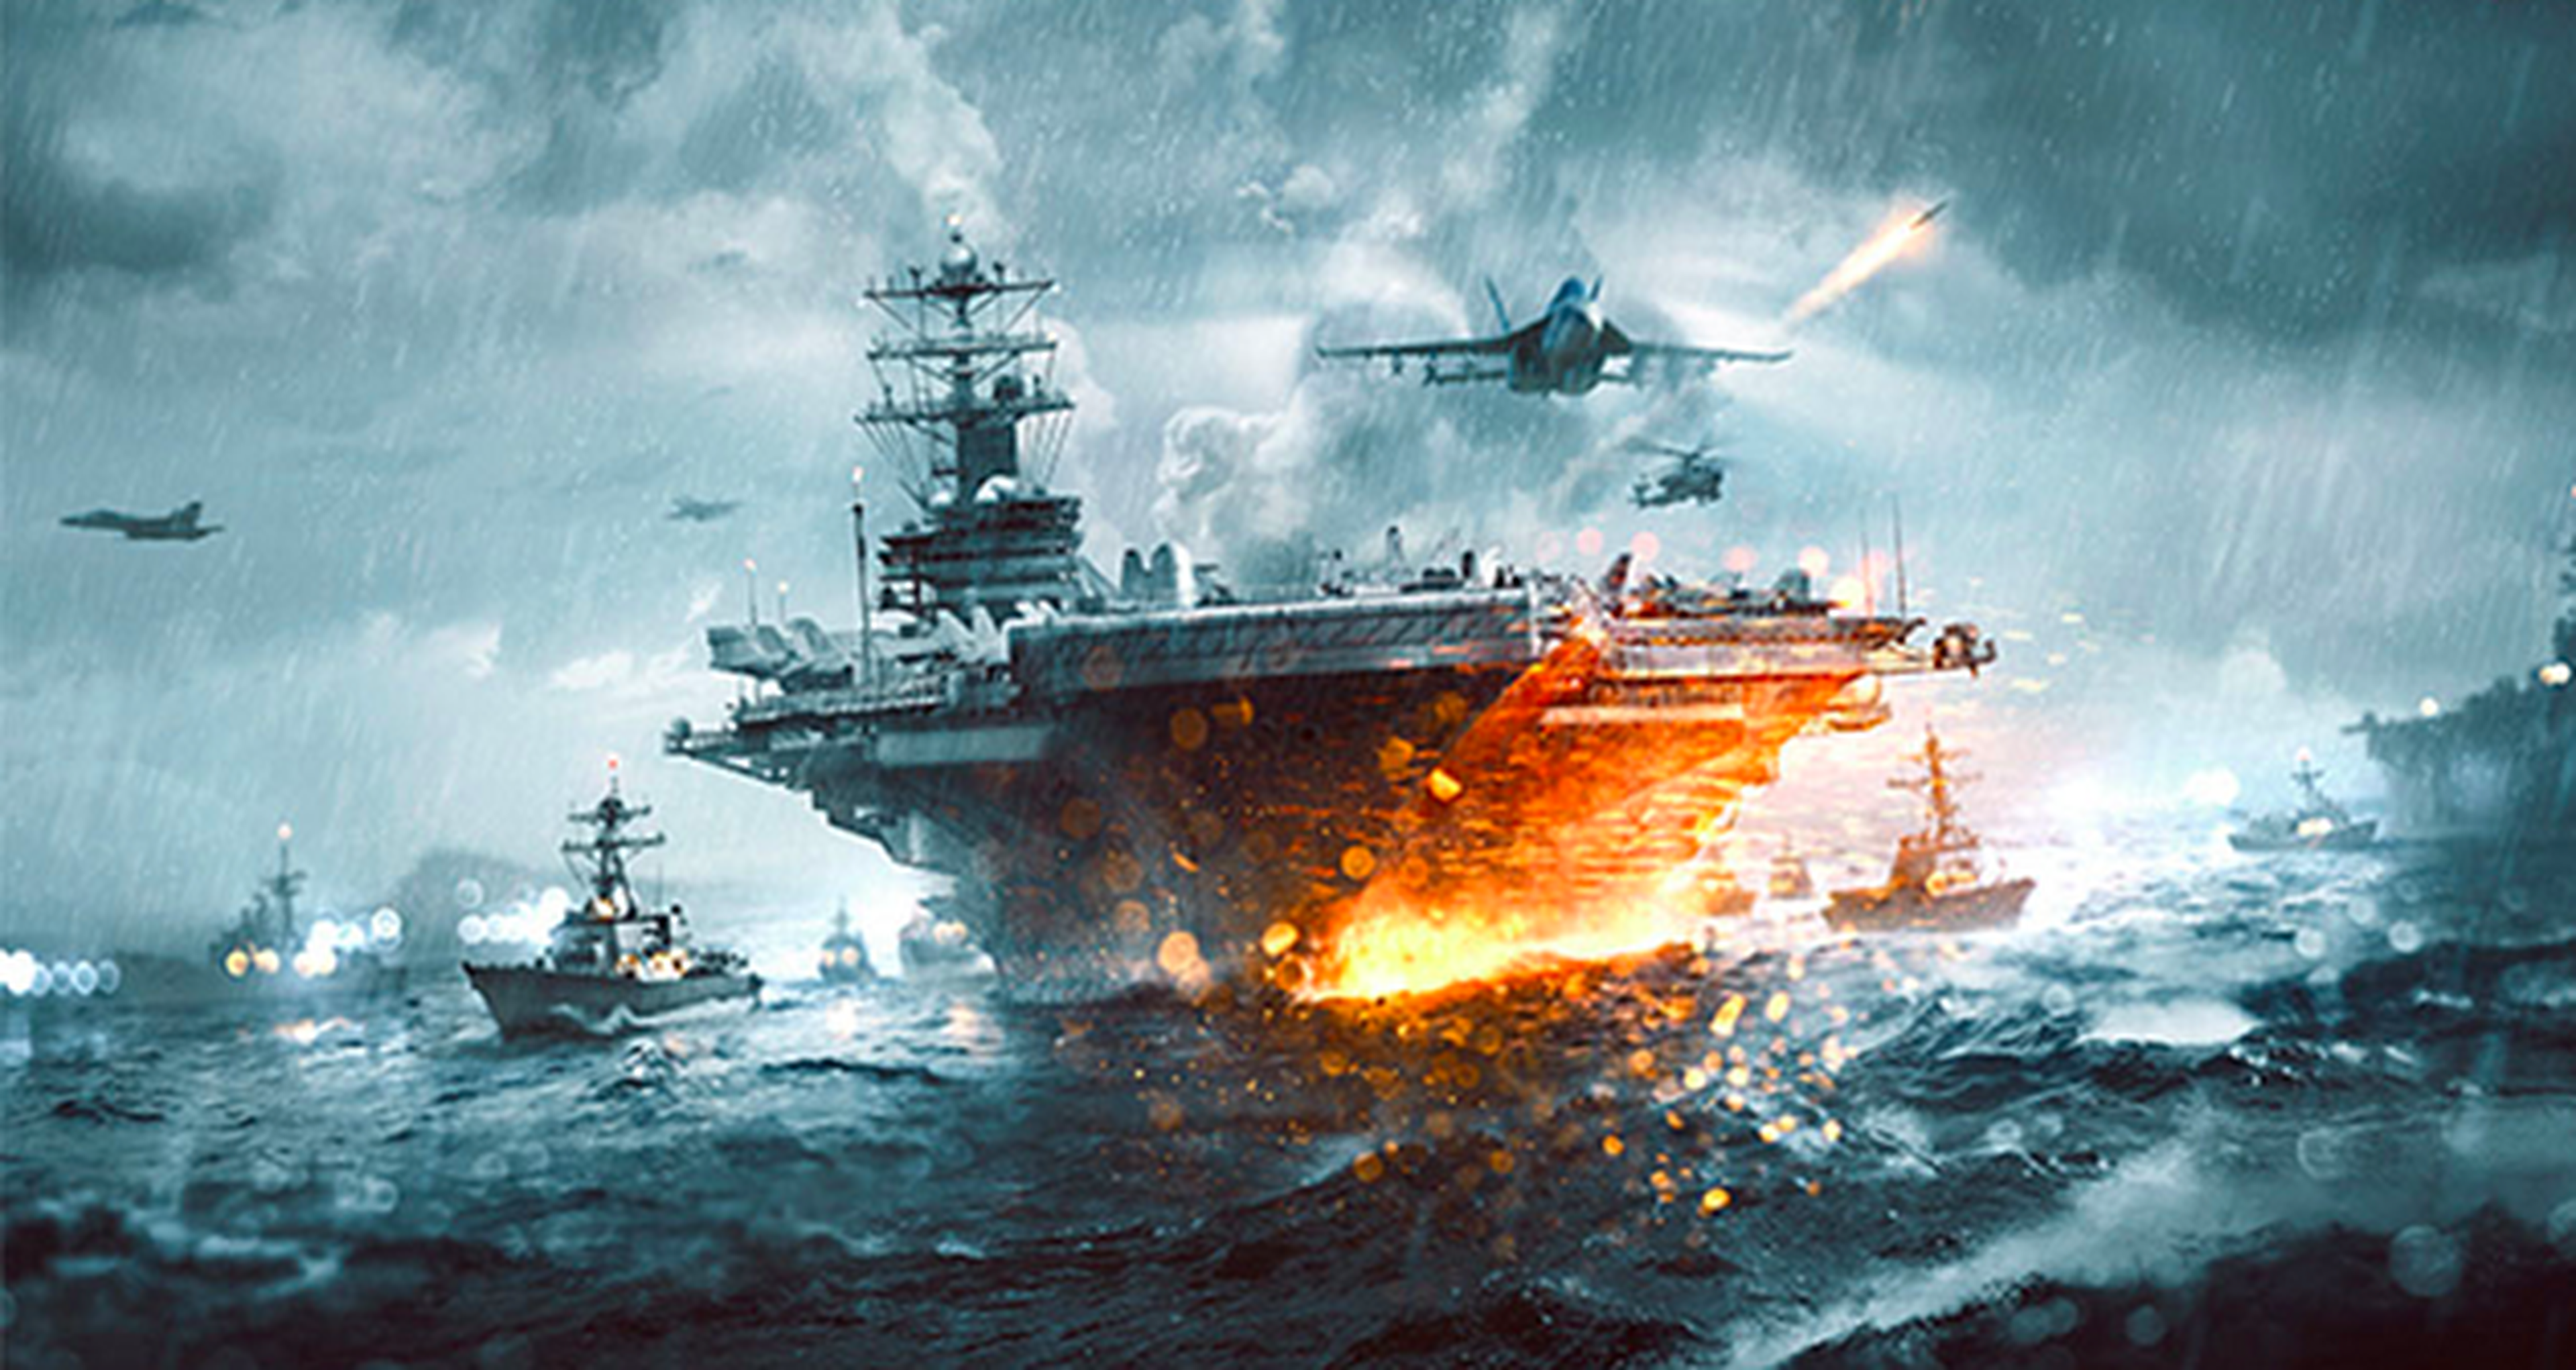 Naval Strike para Battlefield 4, a finales de marzo